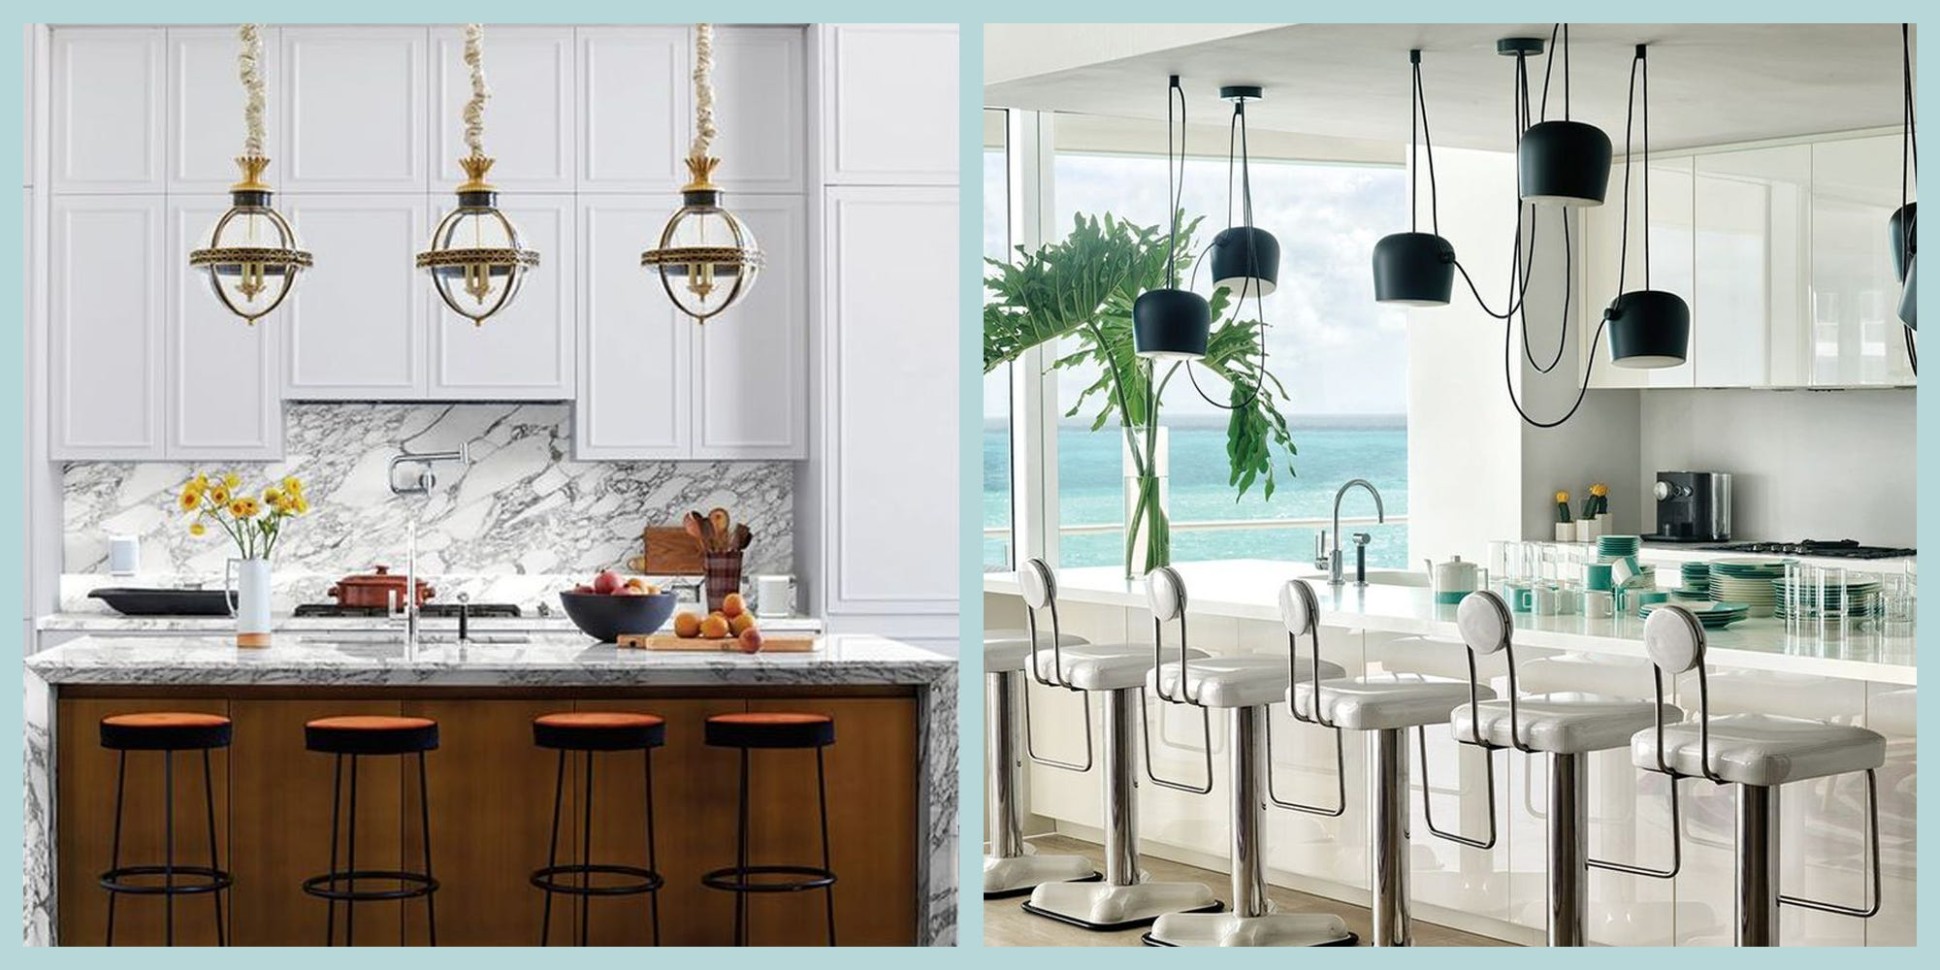 7+ Inspiring Modern Kitchens - Contemporary Kitchen Ideas 7 - contemporary kitchen design ideas